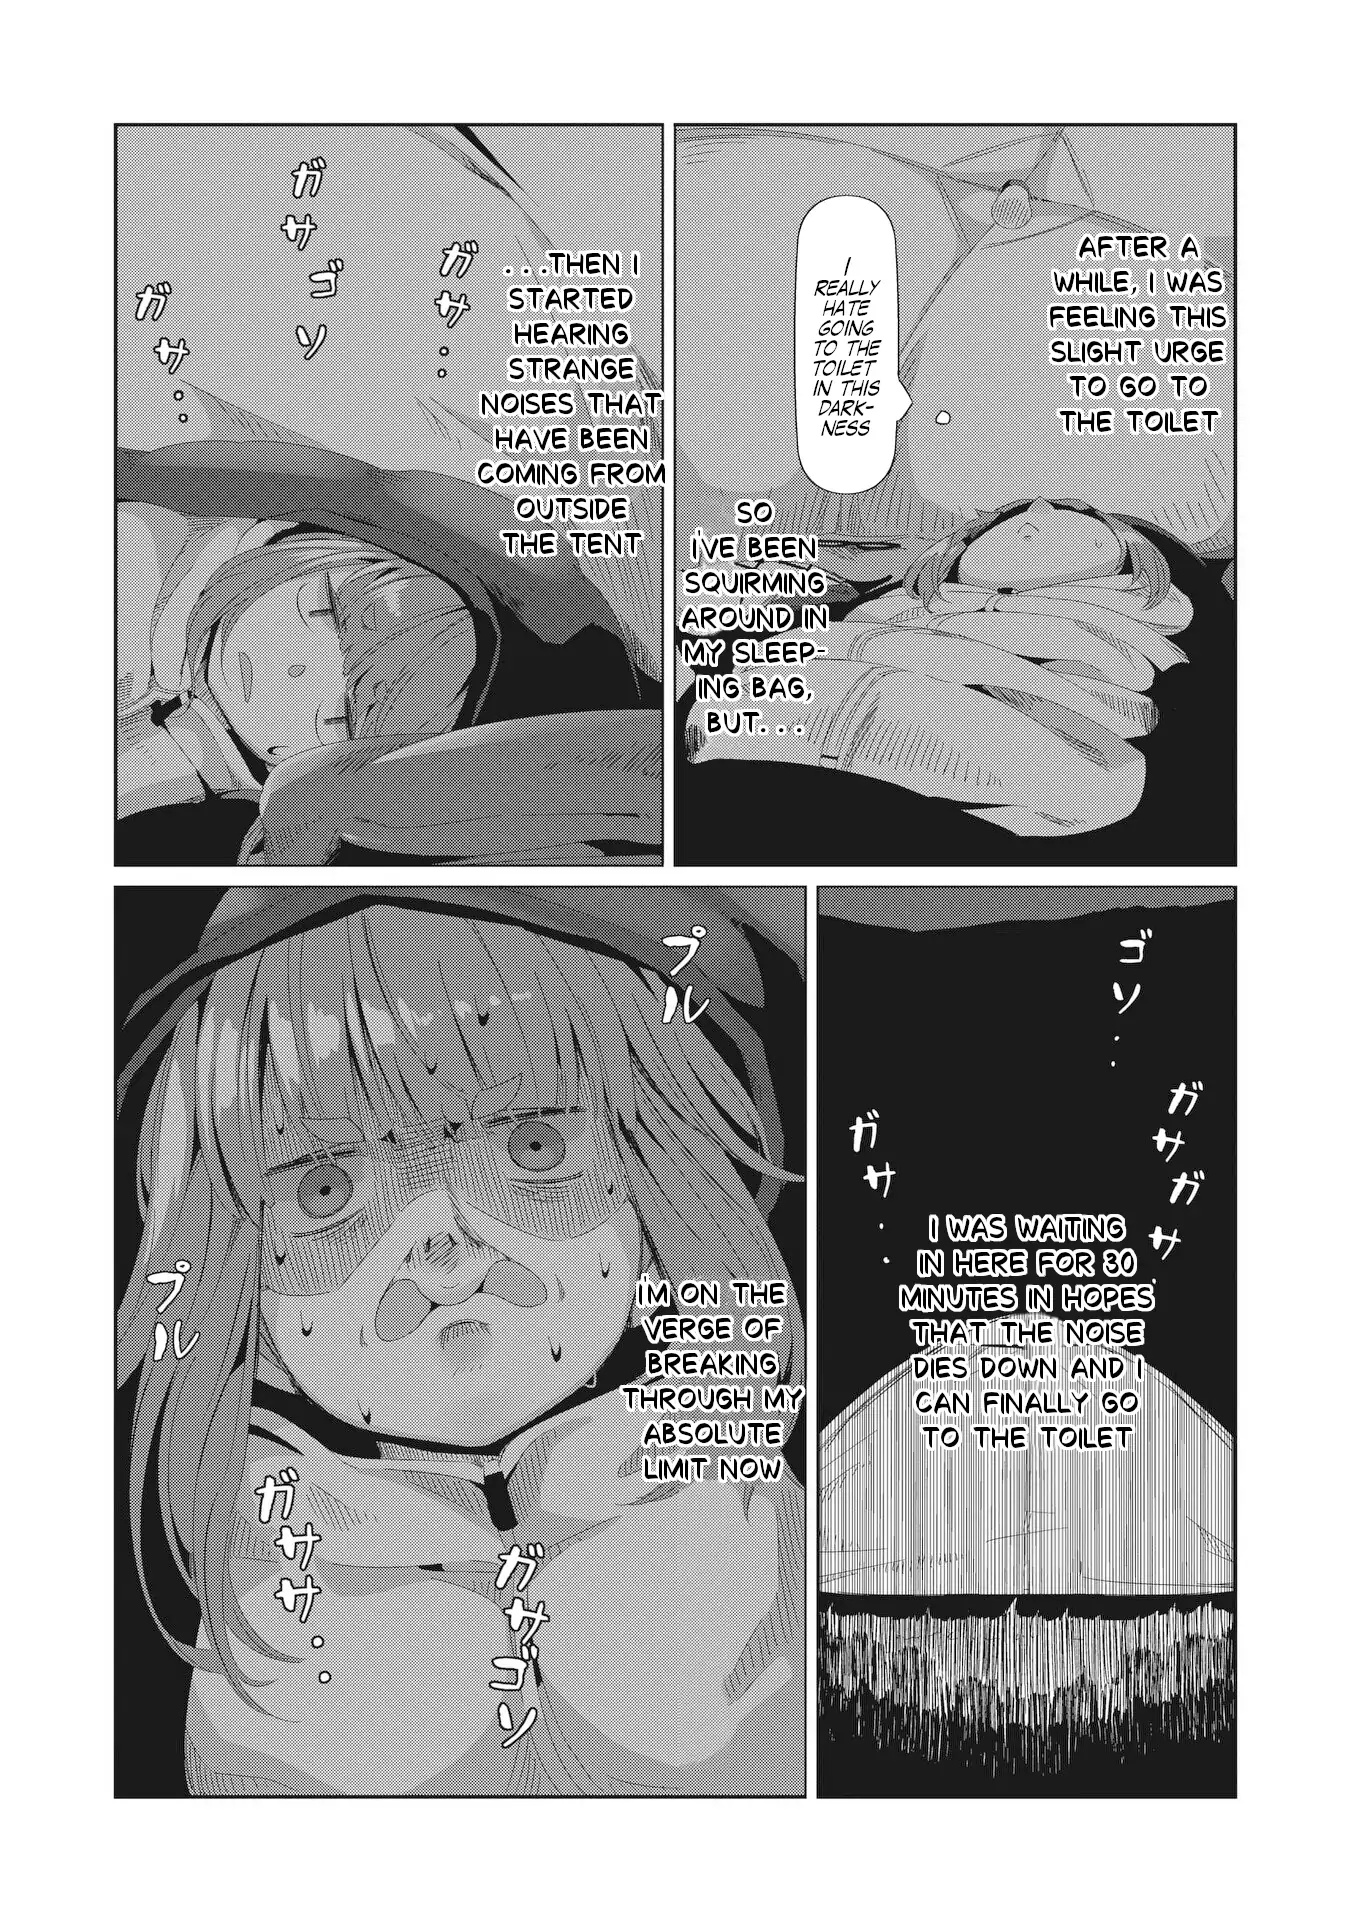 Yuru Camp manga, Laid-Back Camp manga